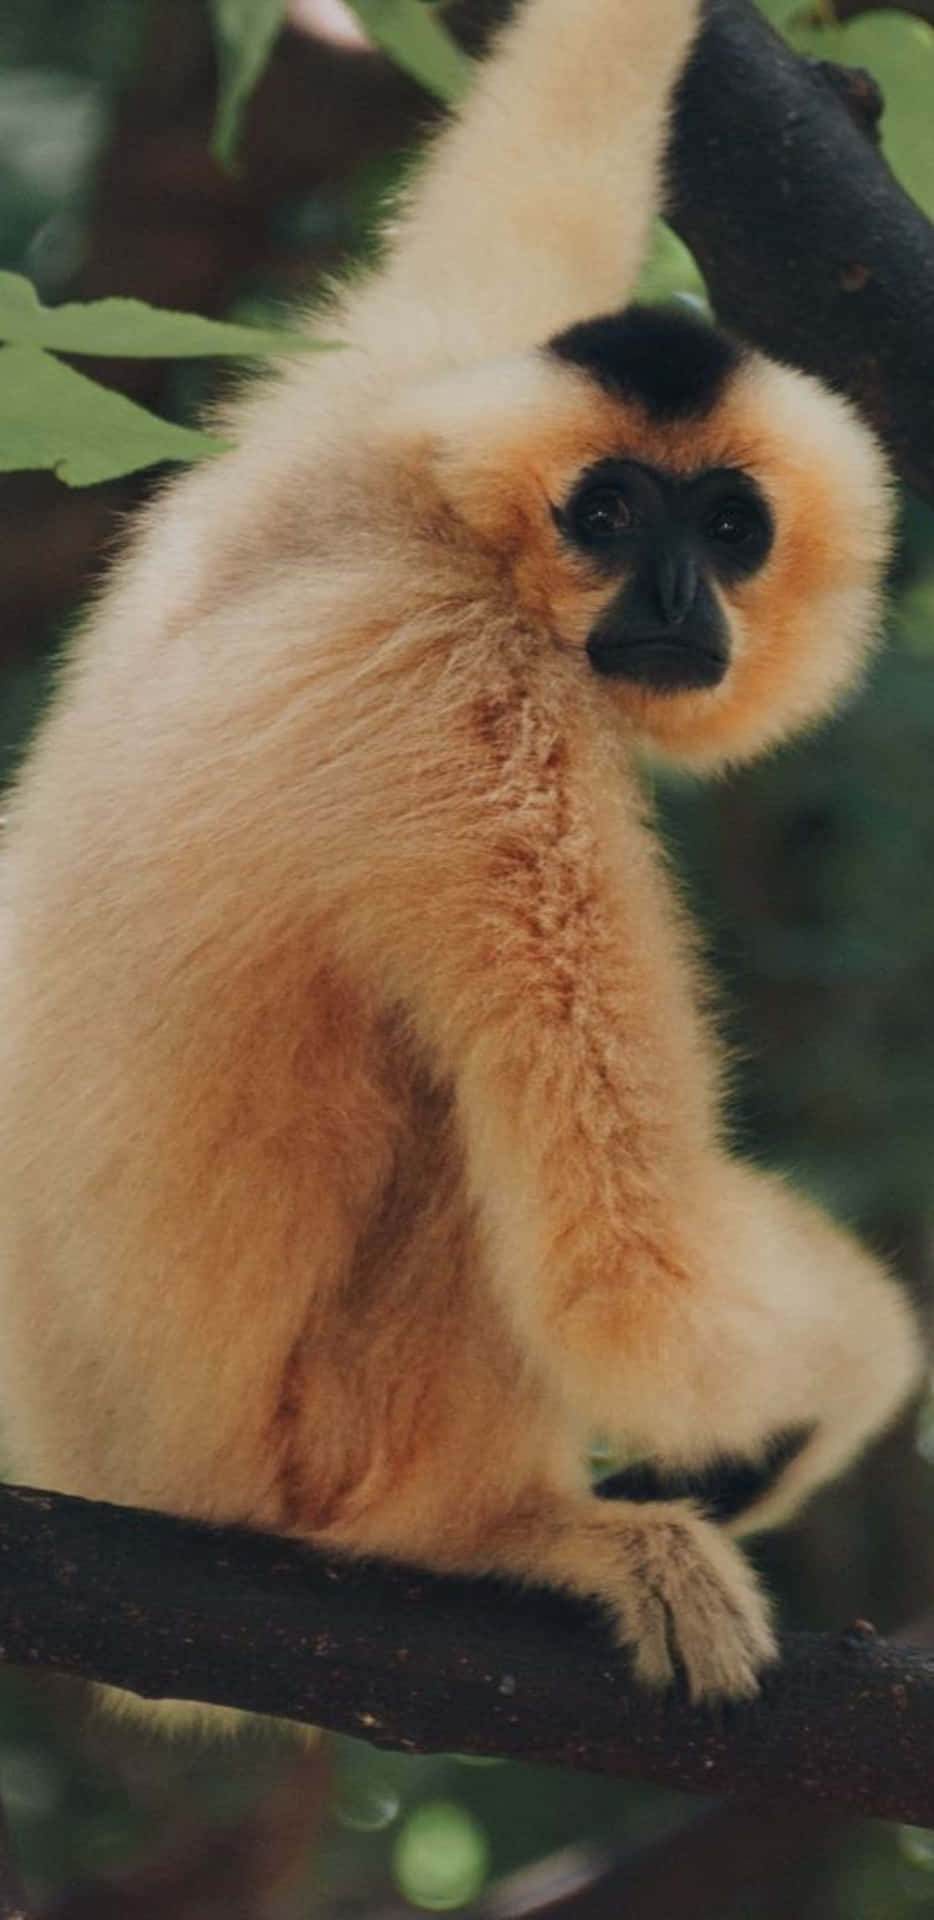 Davicino E Personalmente Con Un Gibbone Curioso Sul Pixel 3xl.